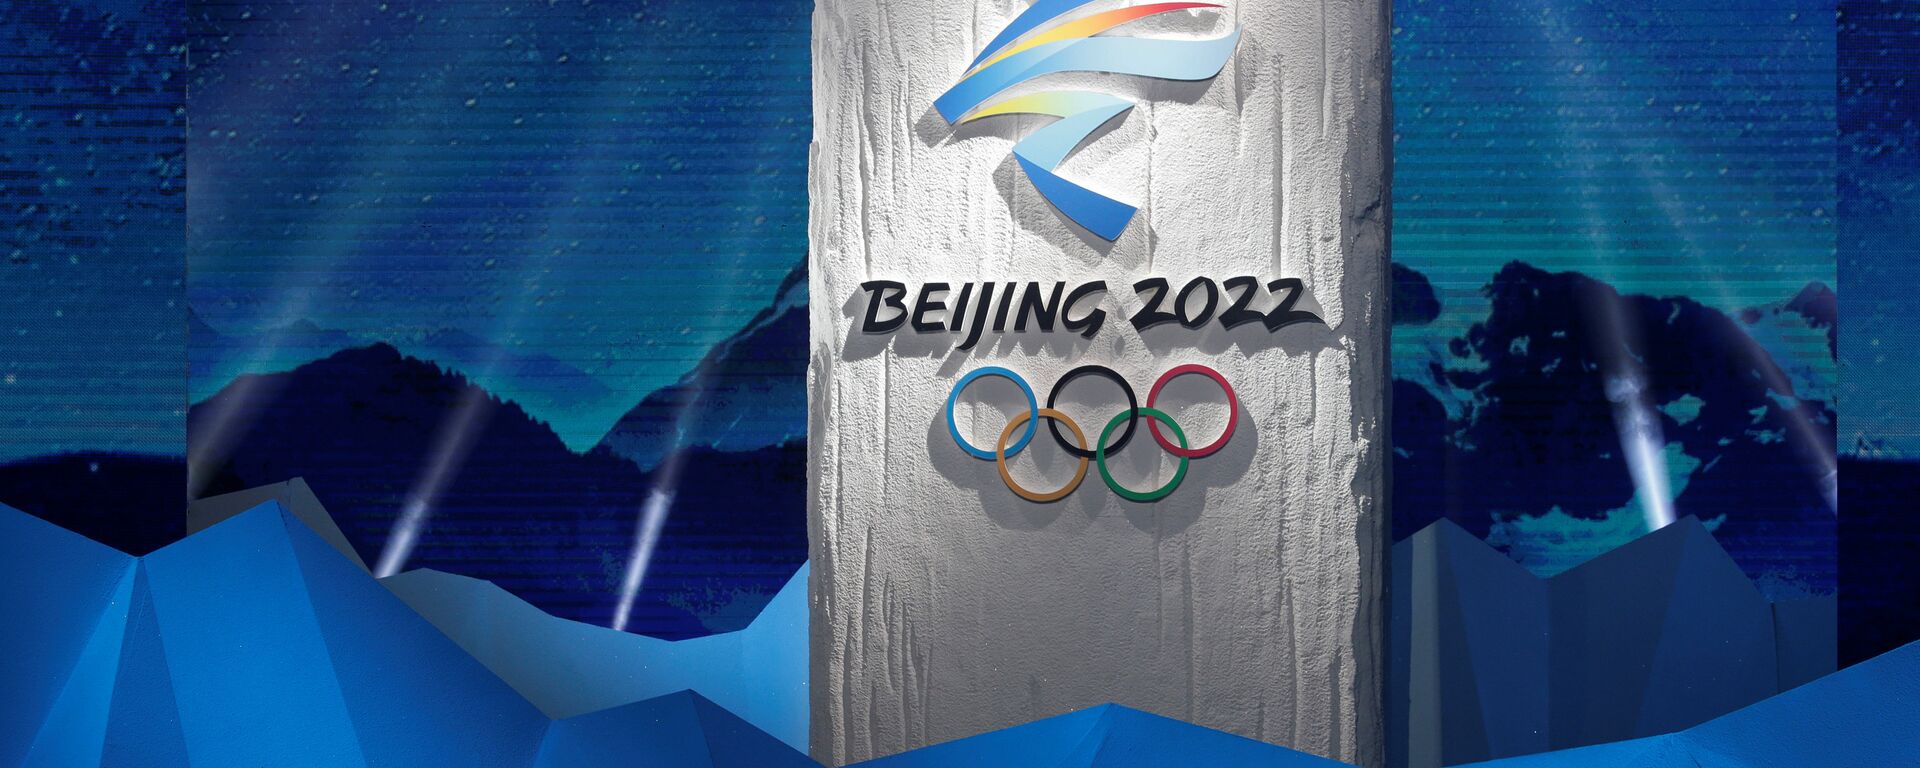 Эмблема Олимпийских зимних игр в Пекине 2022 года - Sputnik Латвия, 1920, 17.11.2021